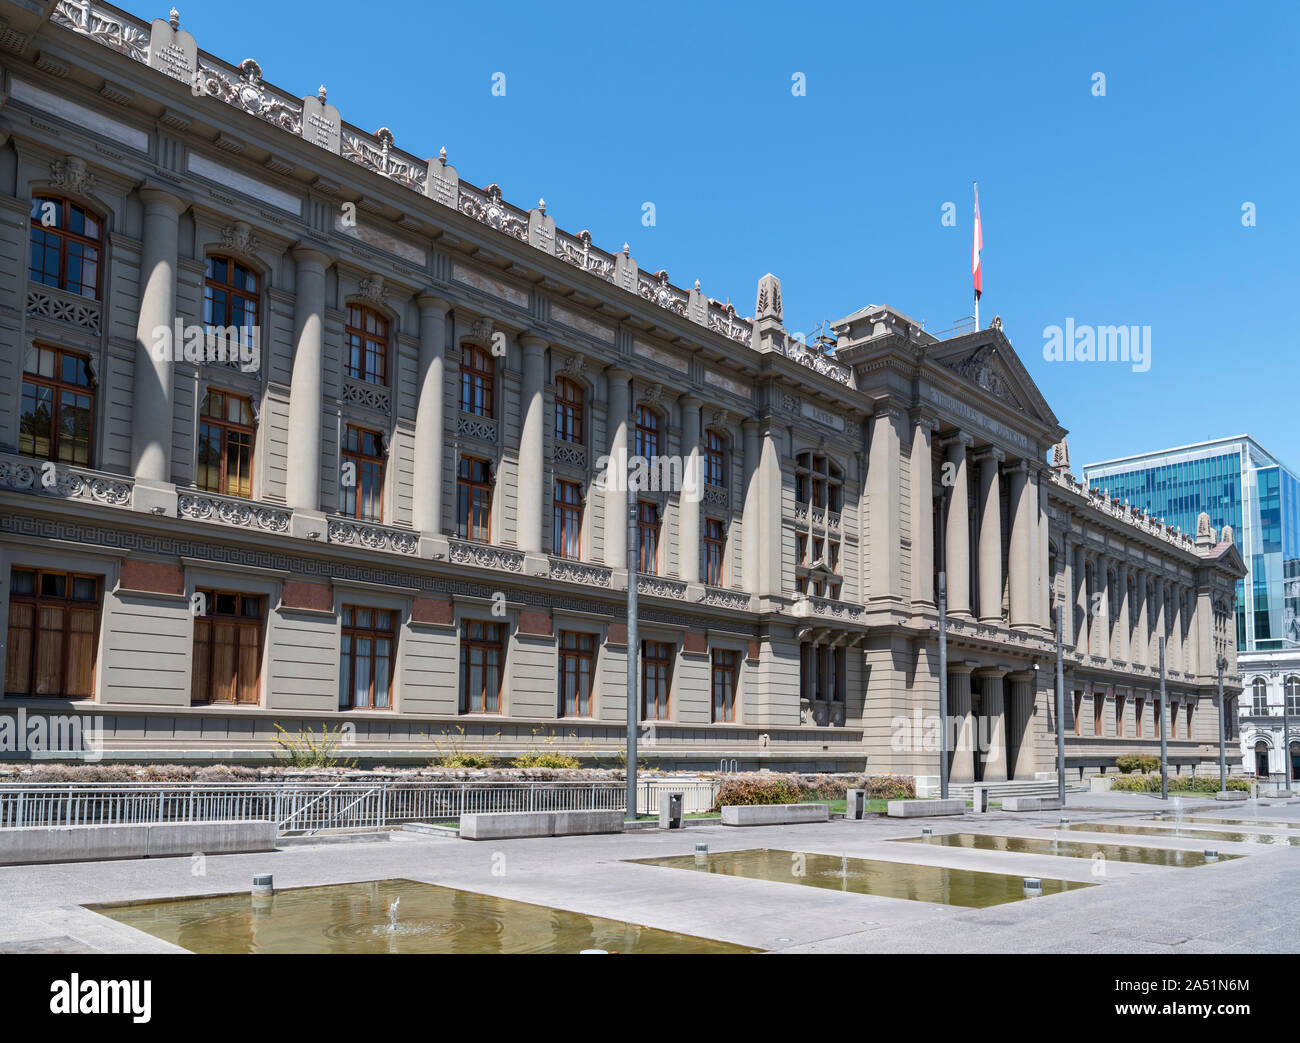 Le Palacio de los tribunales de justicia (la Justice Le palais de justice), qui abrite la Cour suprême du Chili, Santiago, Chili, Amérique du Sud Banque D'Images